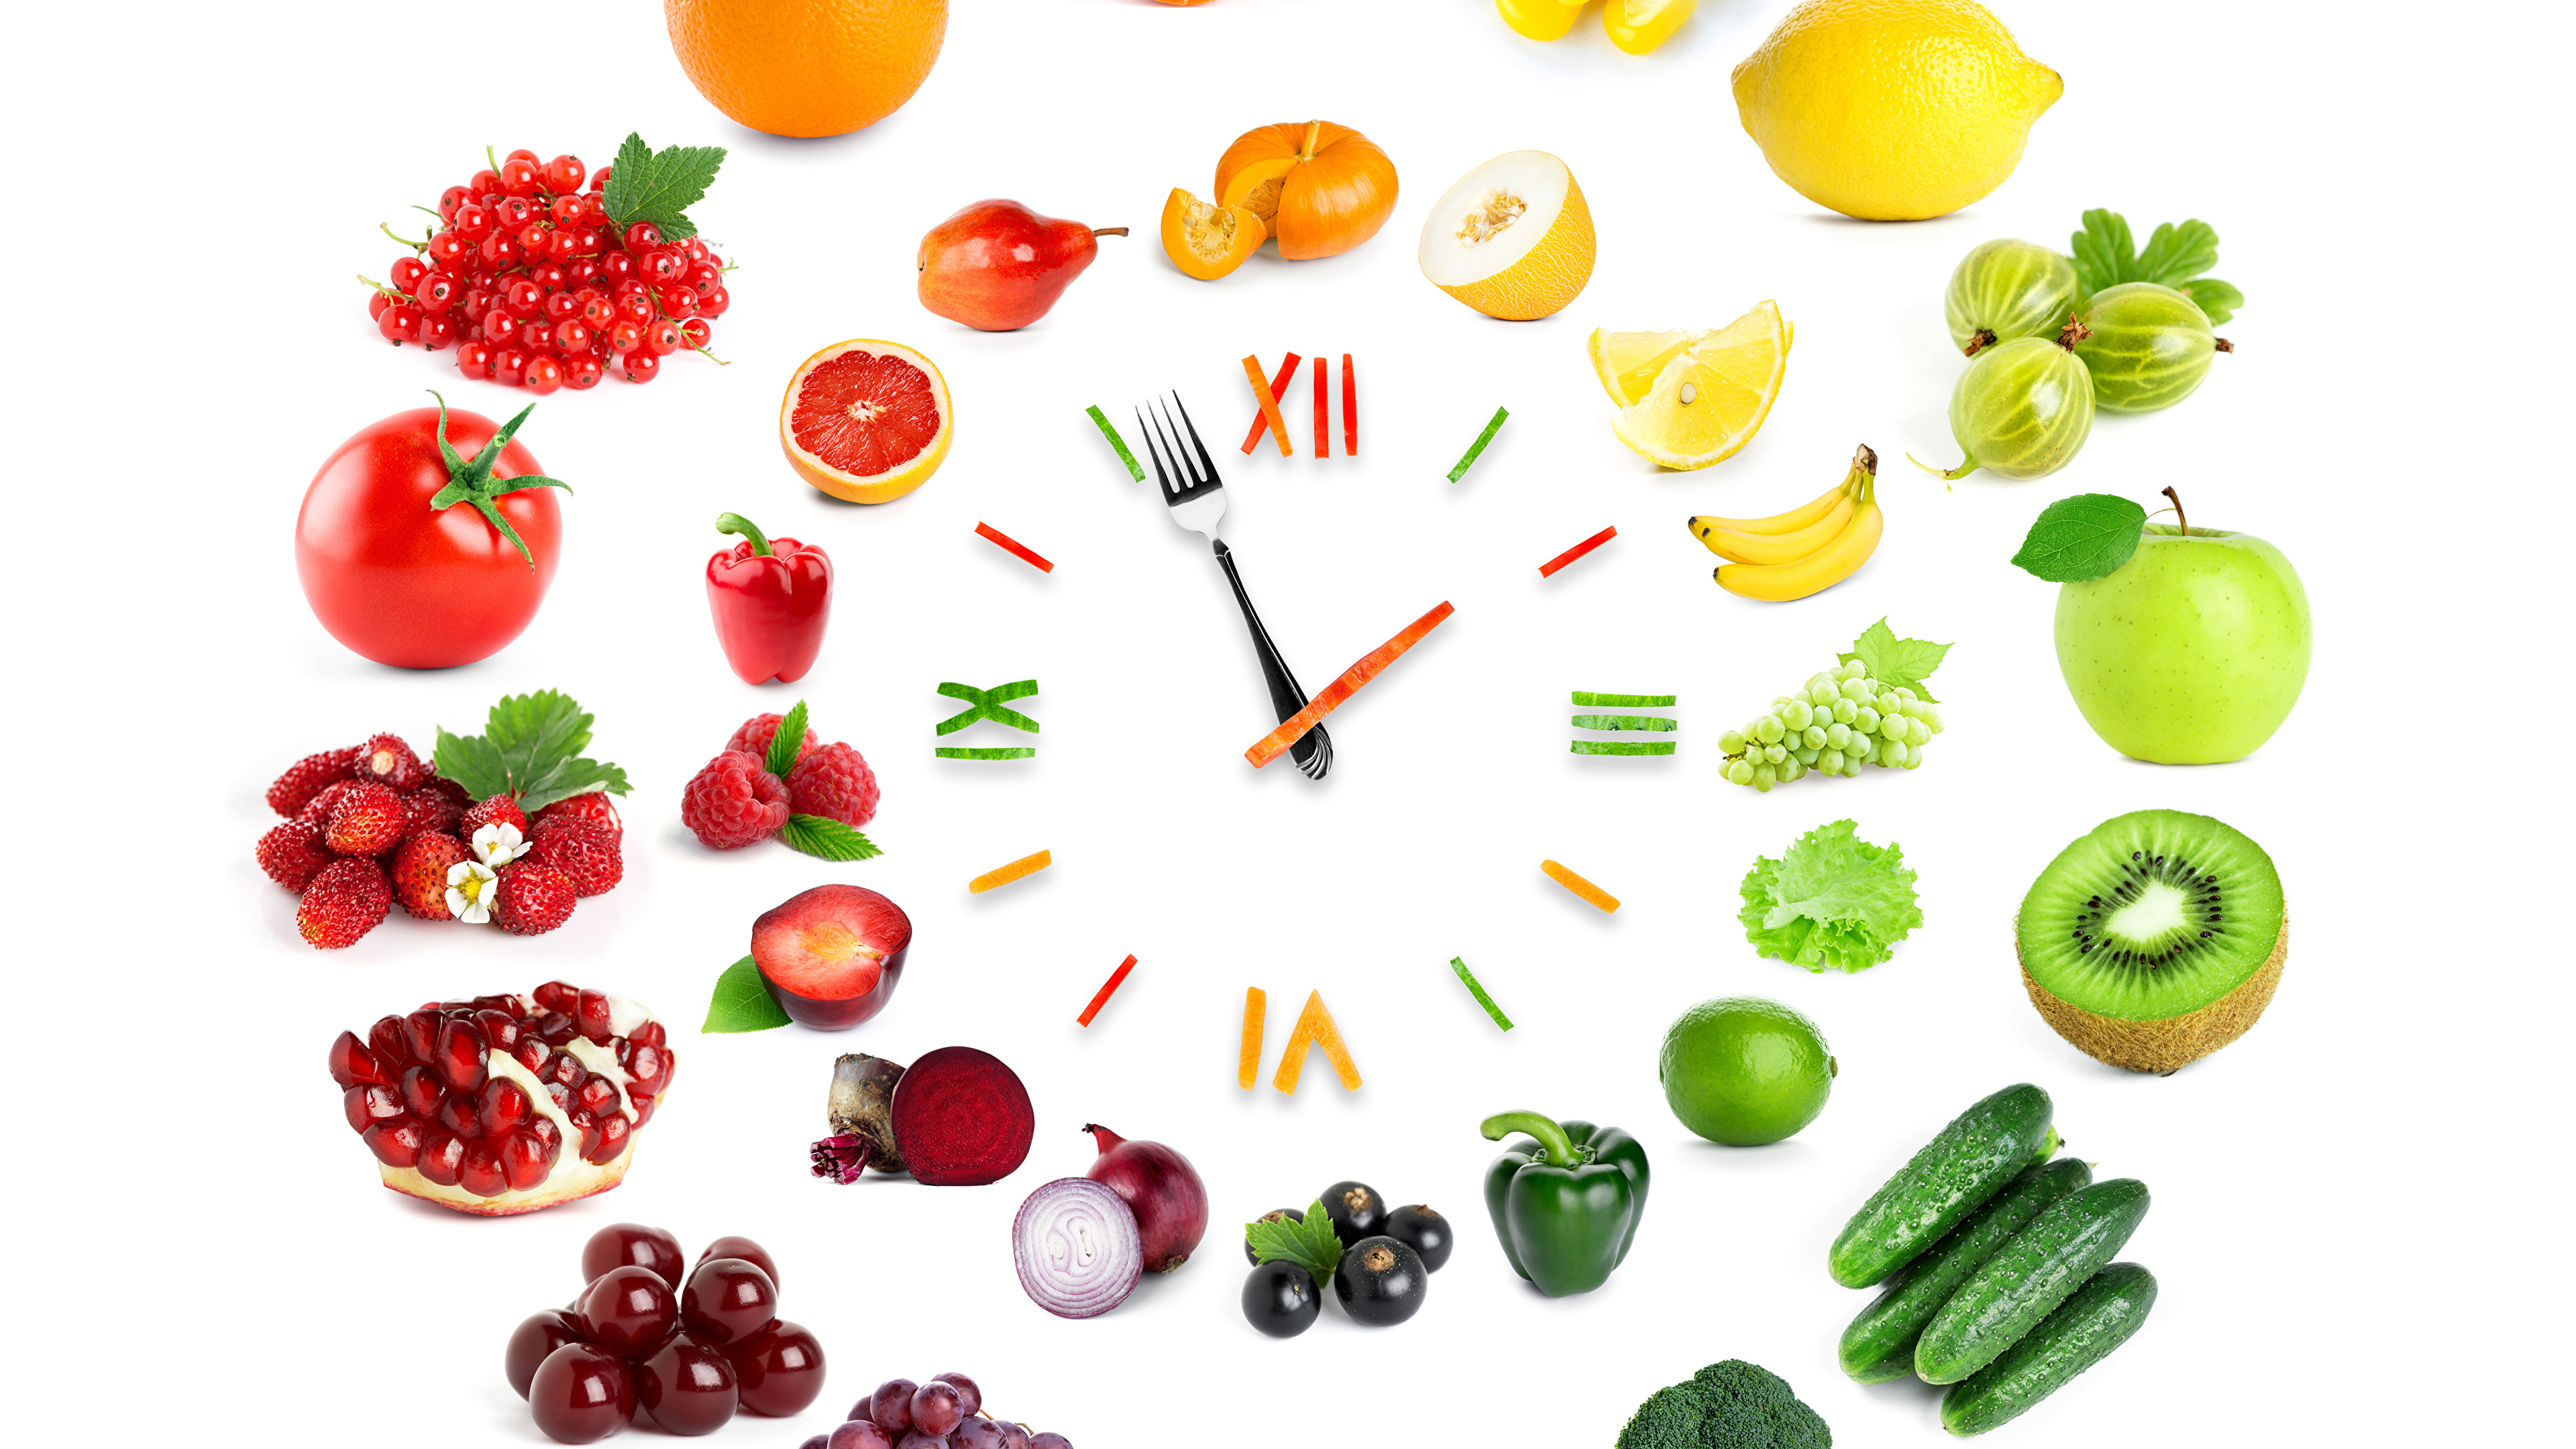 Фруктовый час. Здоровое питание. Правильное питание овощи и фрукты. Правильное питание фон. Полезные продукты на белом фоне.